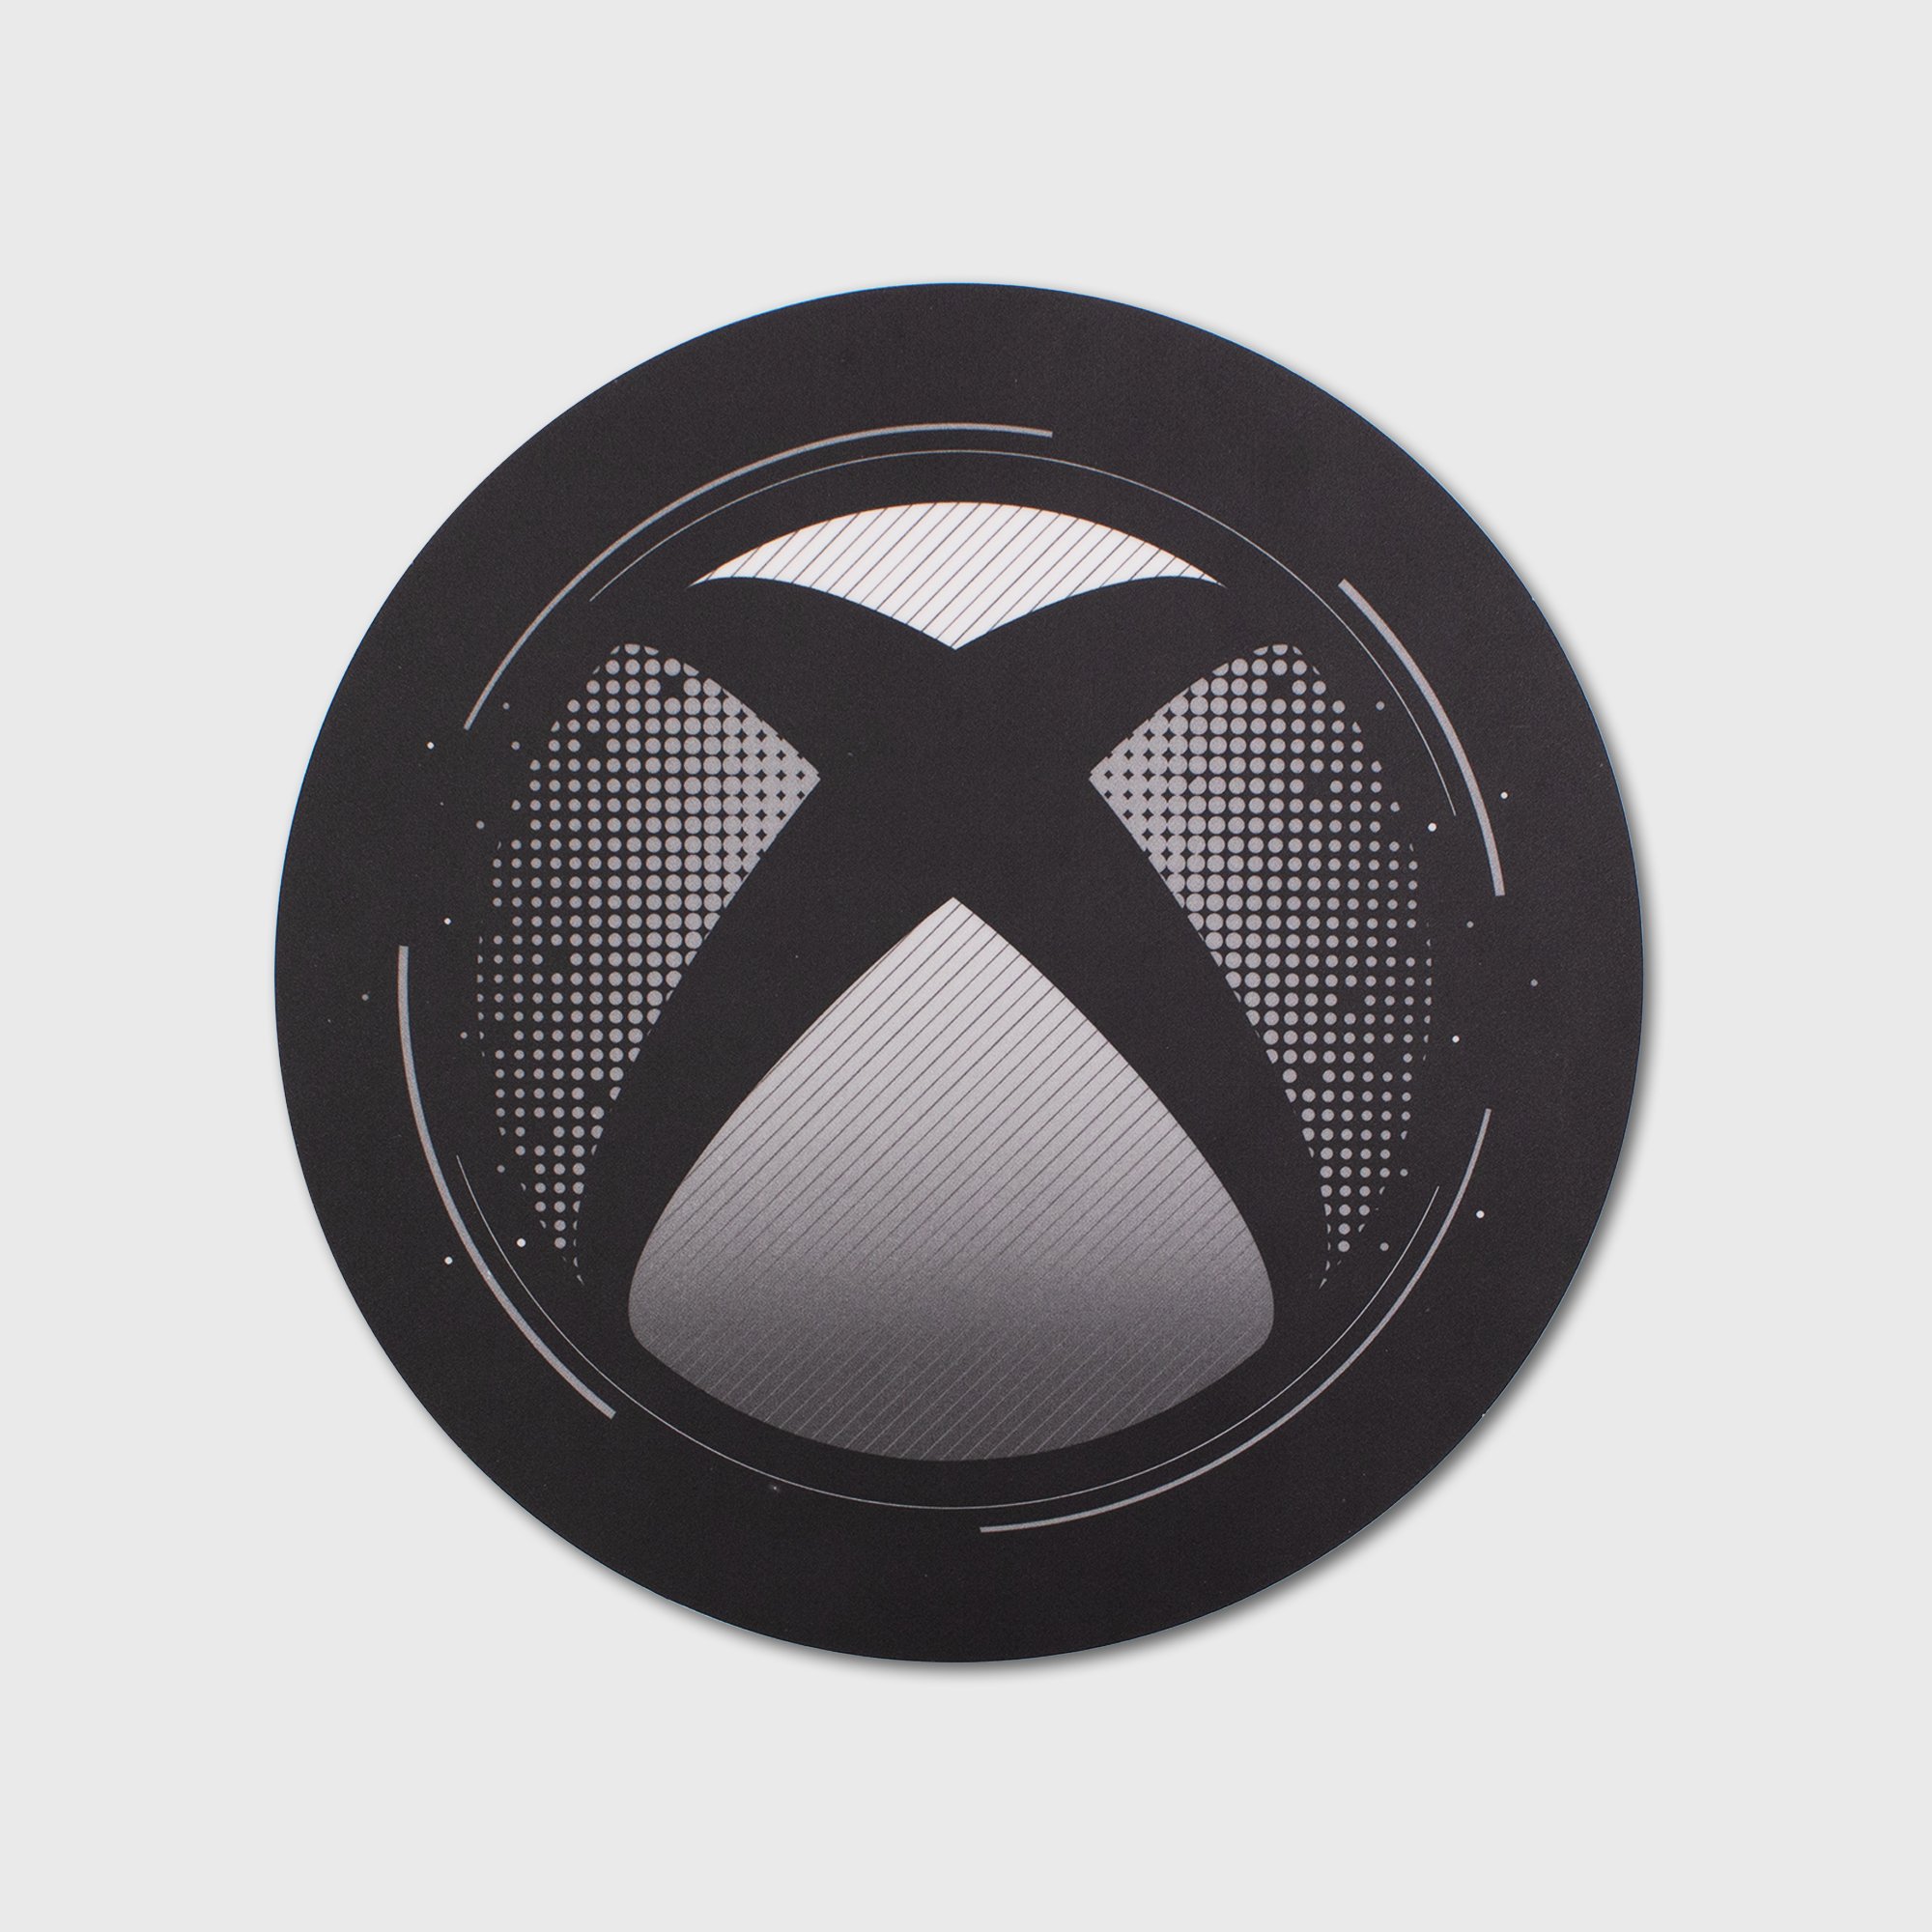 Xbox Collector's Box画像